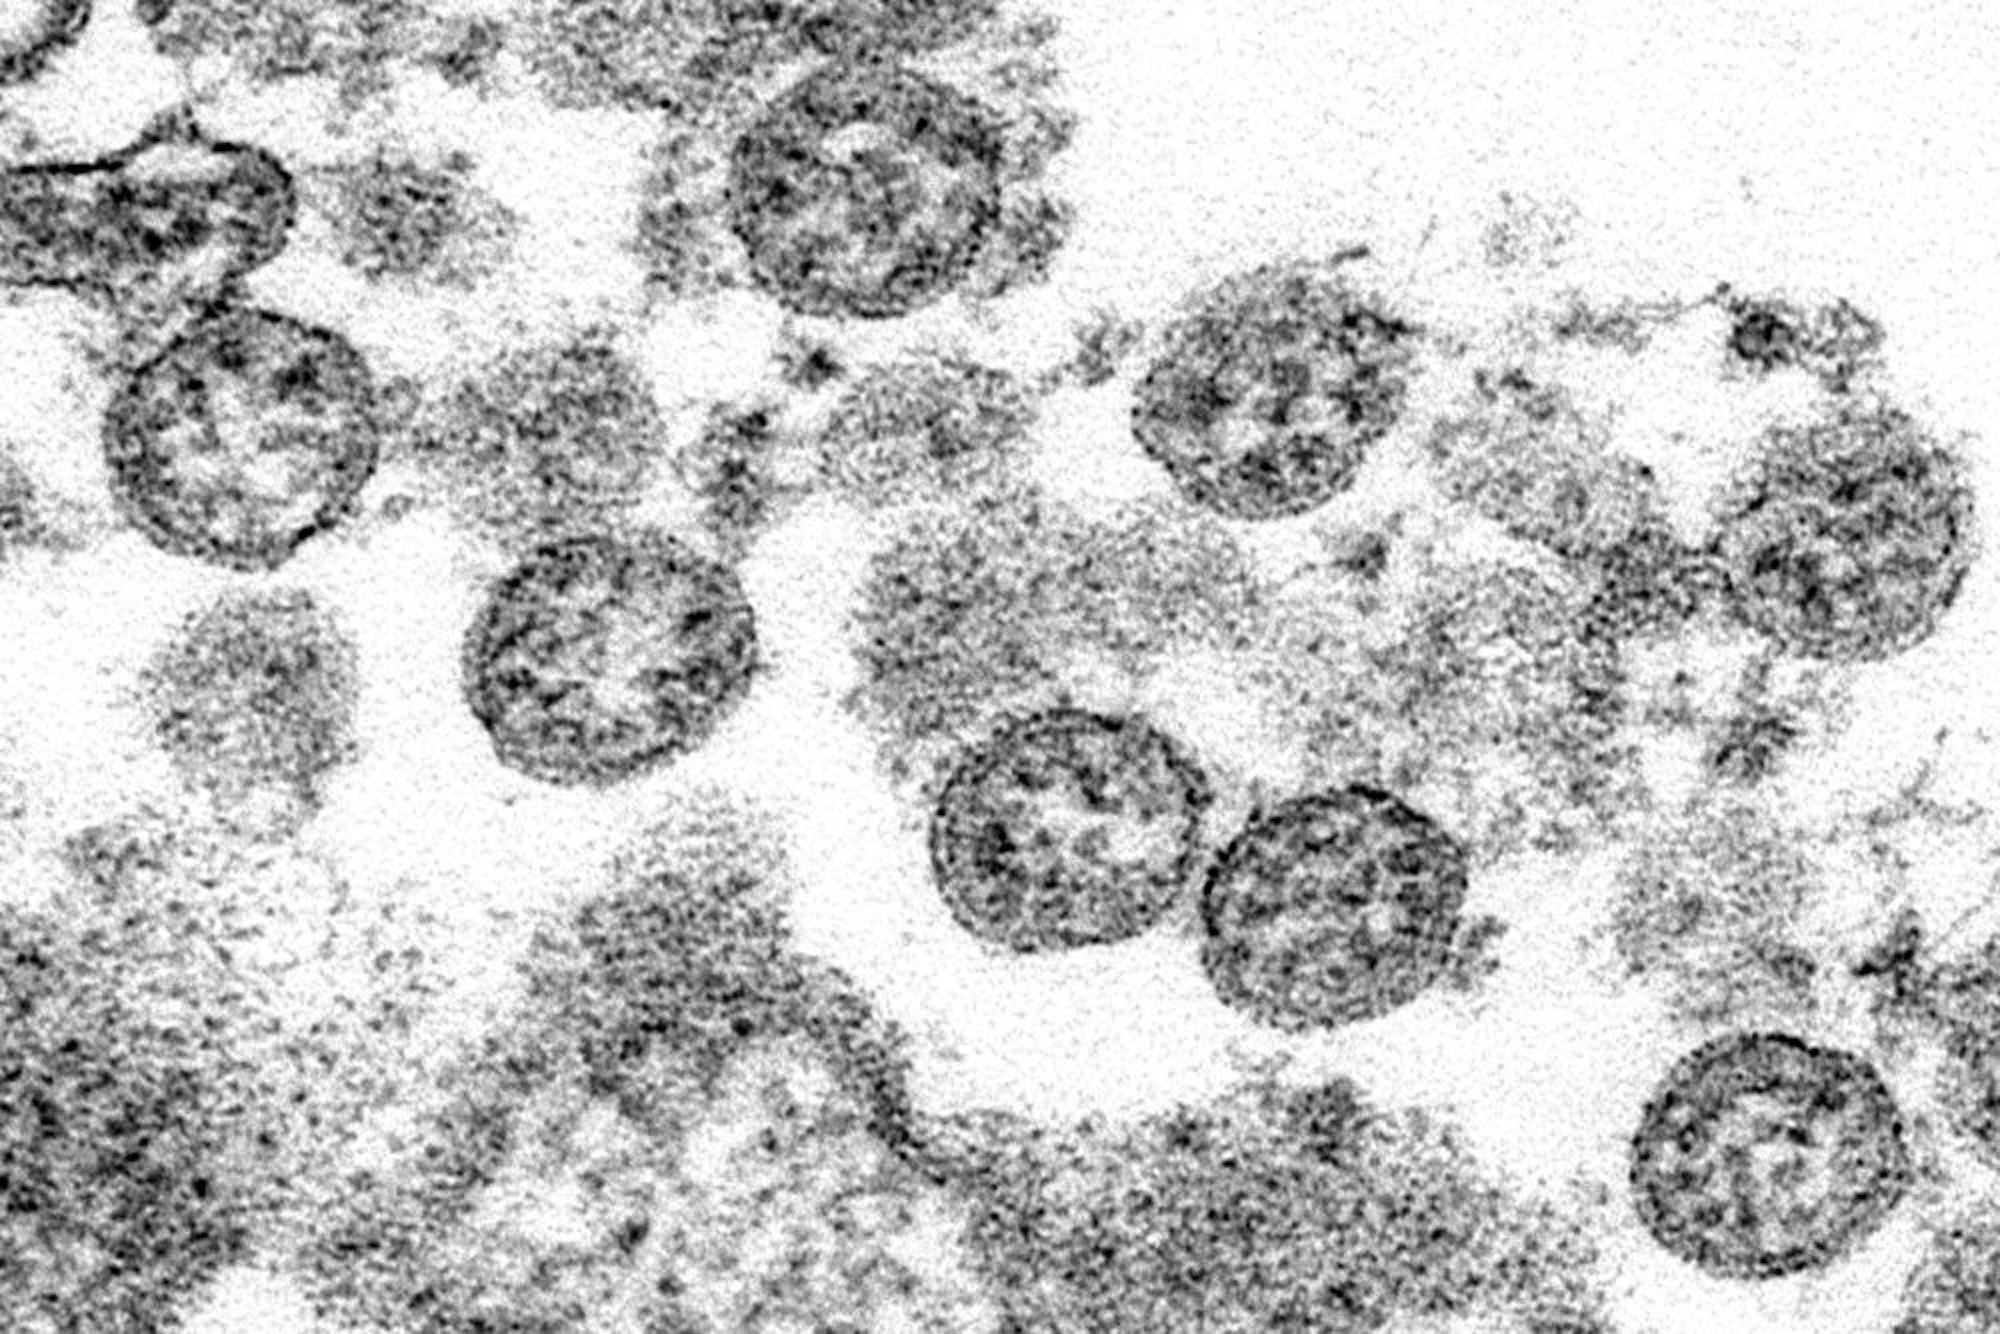 Dieses von den U.S. Centers for Disease Control and Prevention zur Verfügung gestellte Elektronenmikroskop aus dem Jahr 2020 zeigt die kugelförmigen Coronavirus-Partikel aus dem ersten US-Fall von COVID-19.